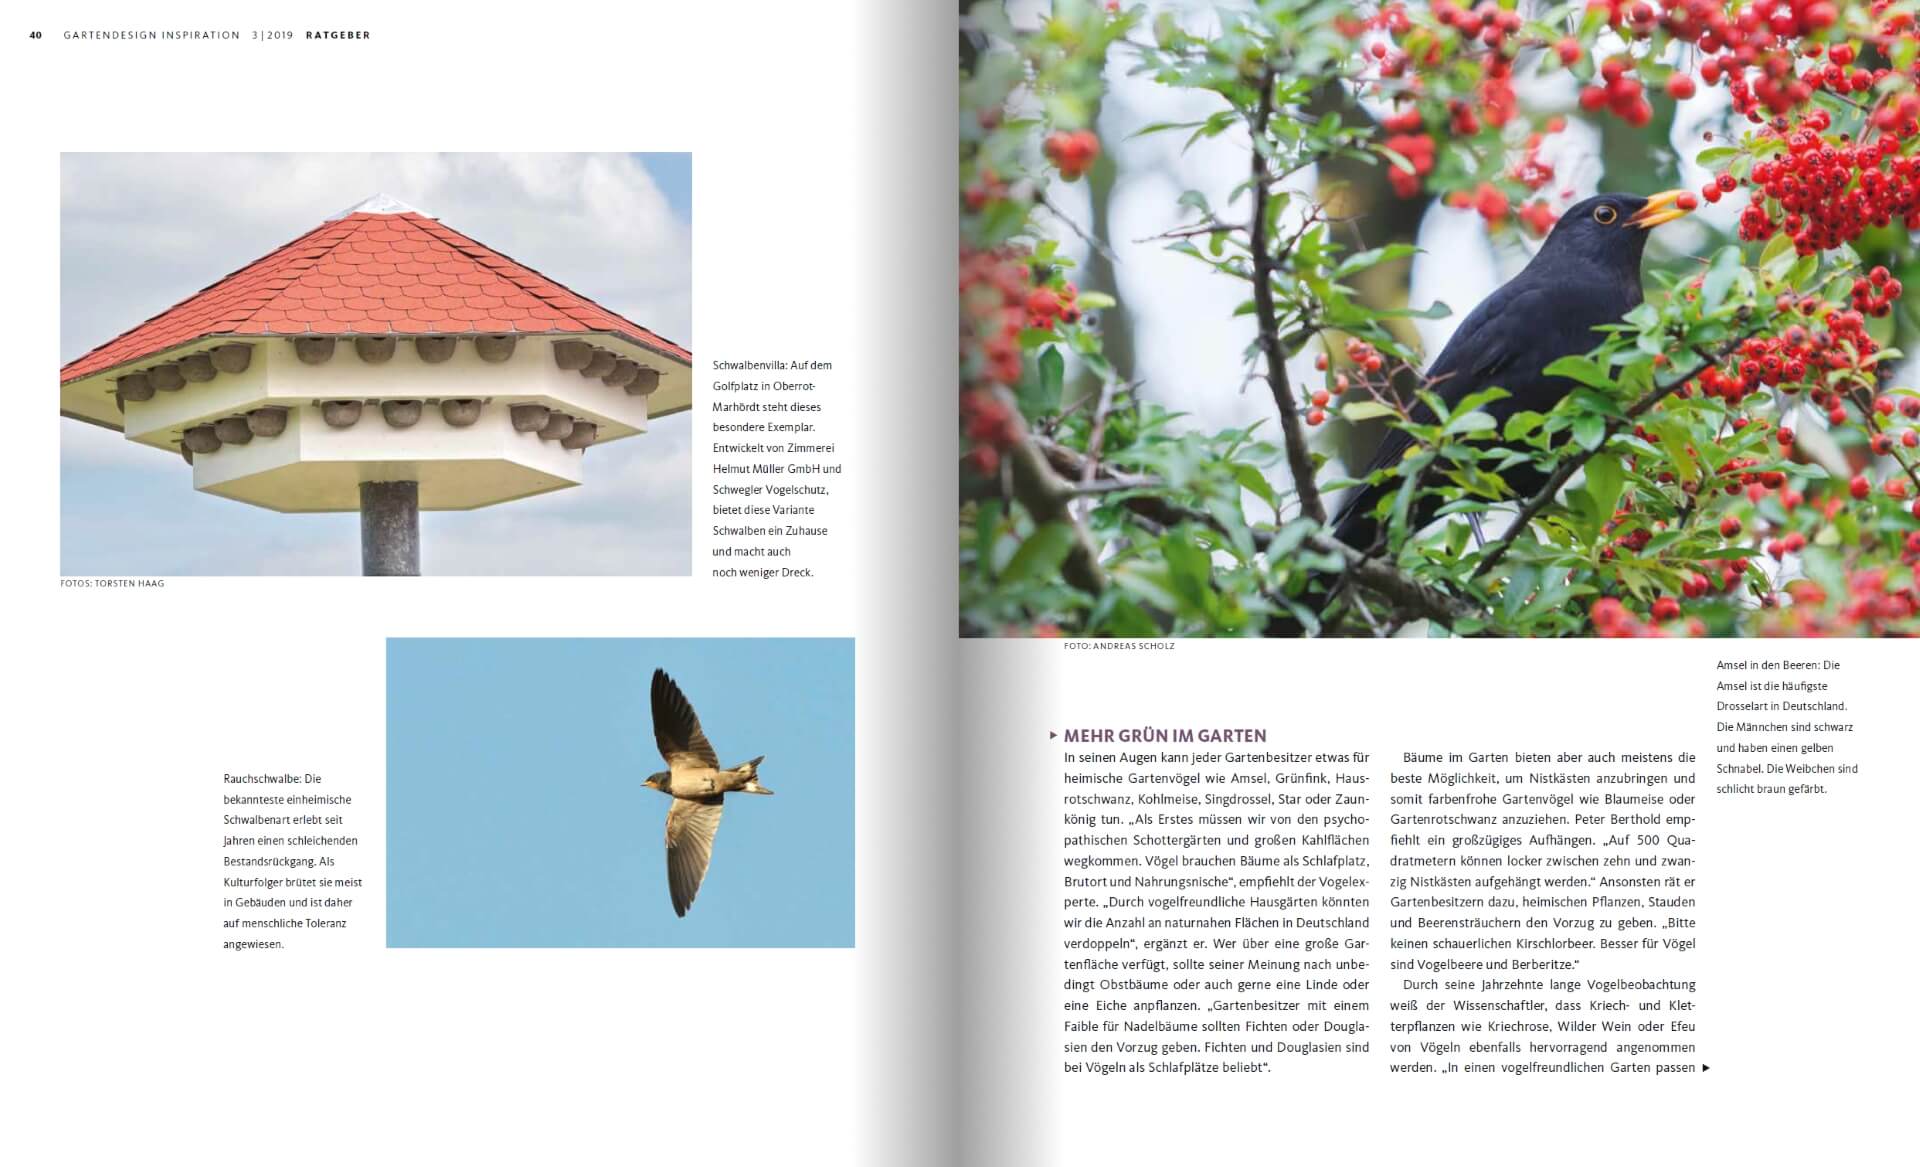 GARTENDESIGN INSPIRATION Ausgabe 3/2019: Mehr Vogelgezwitscher im Garten